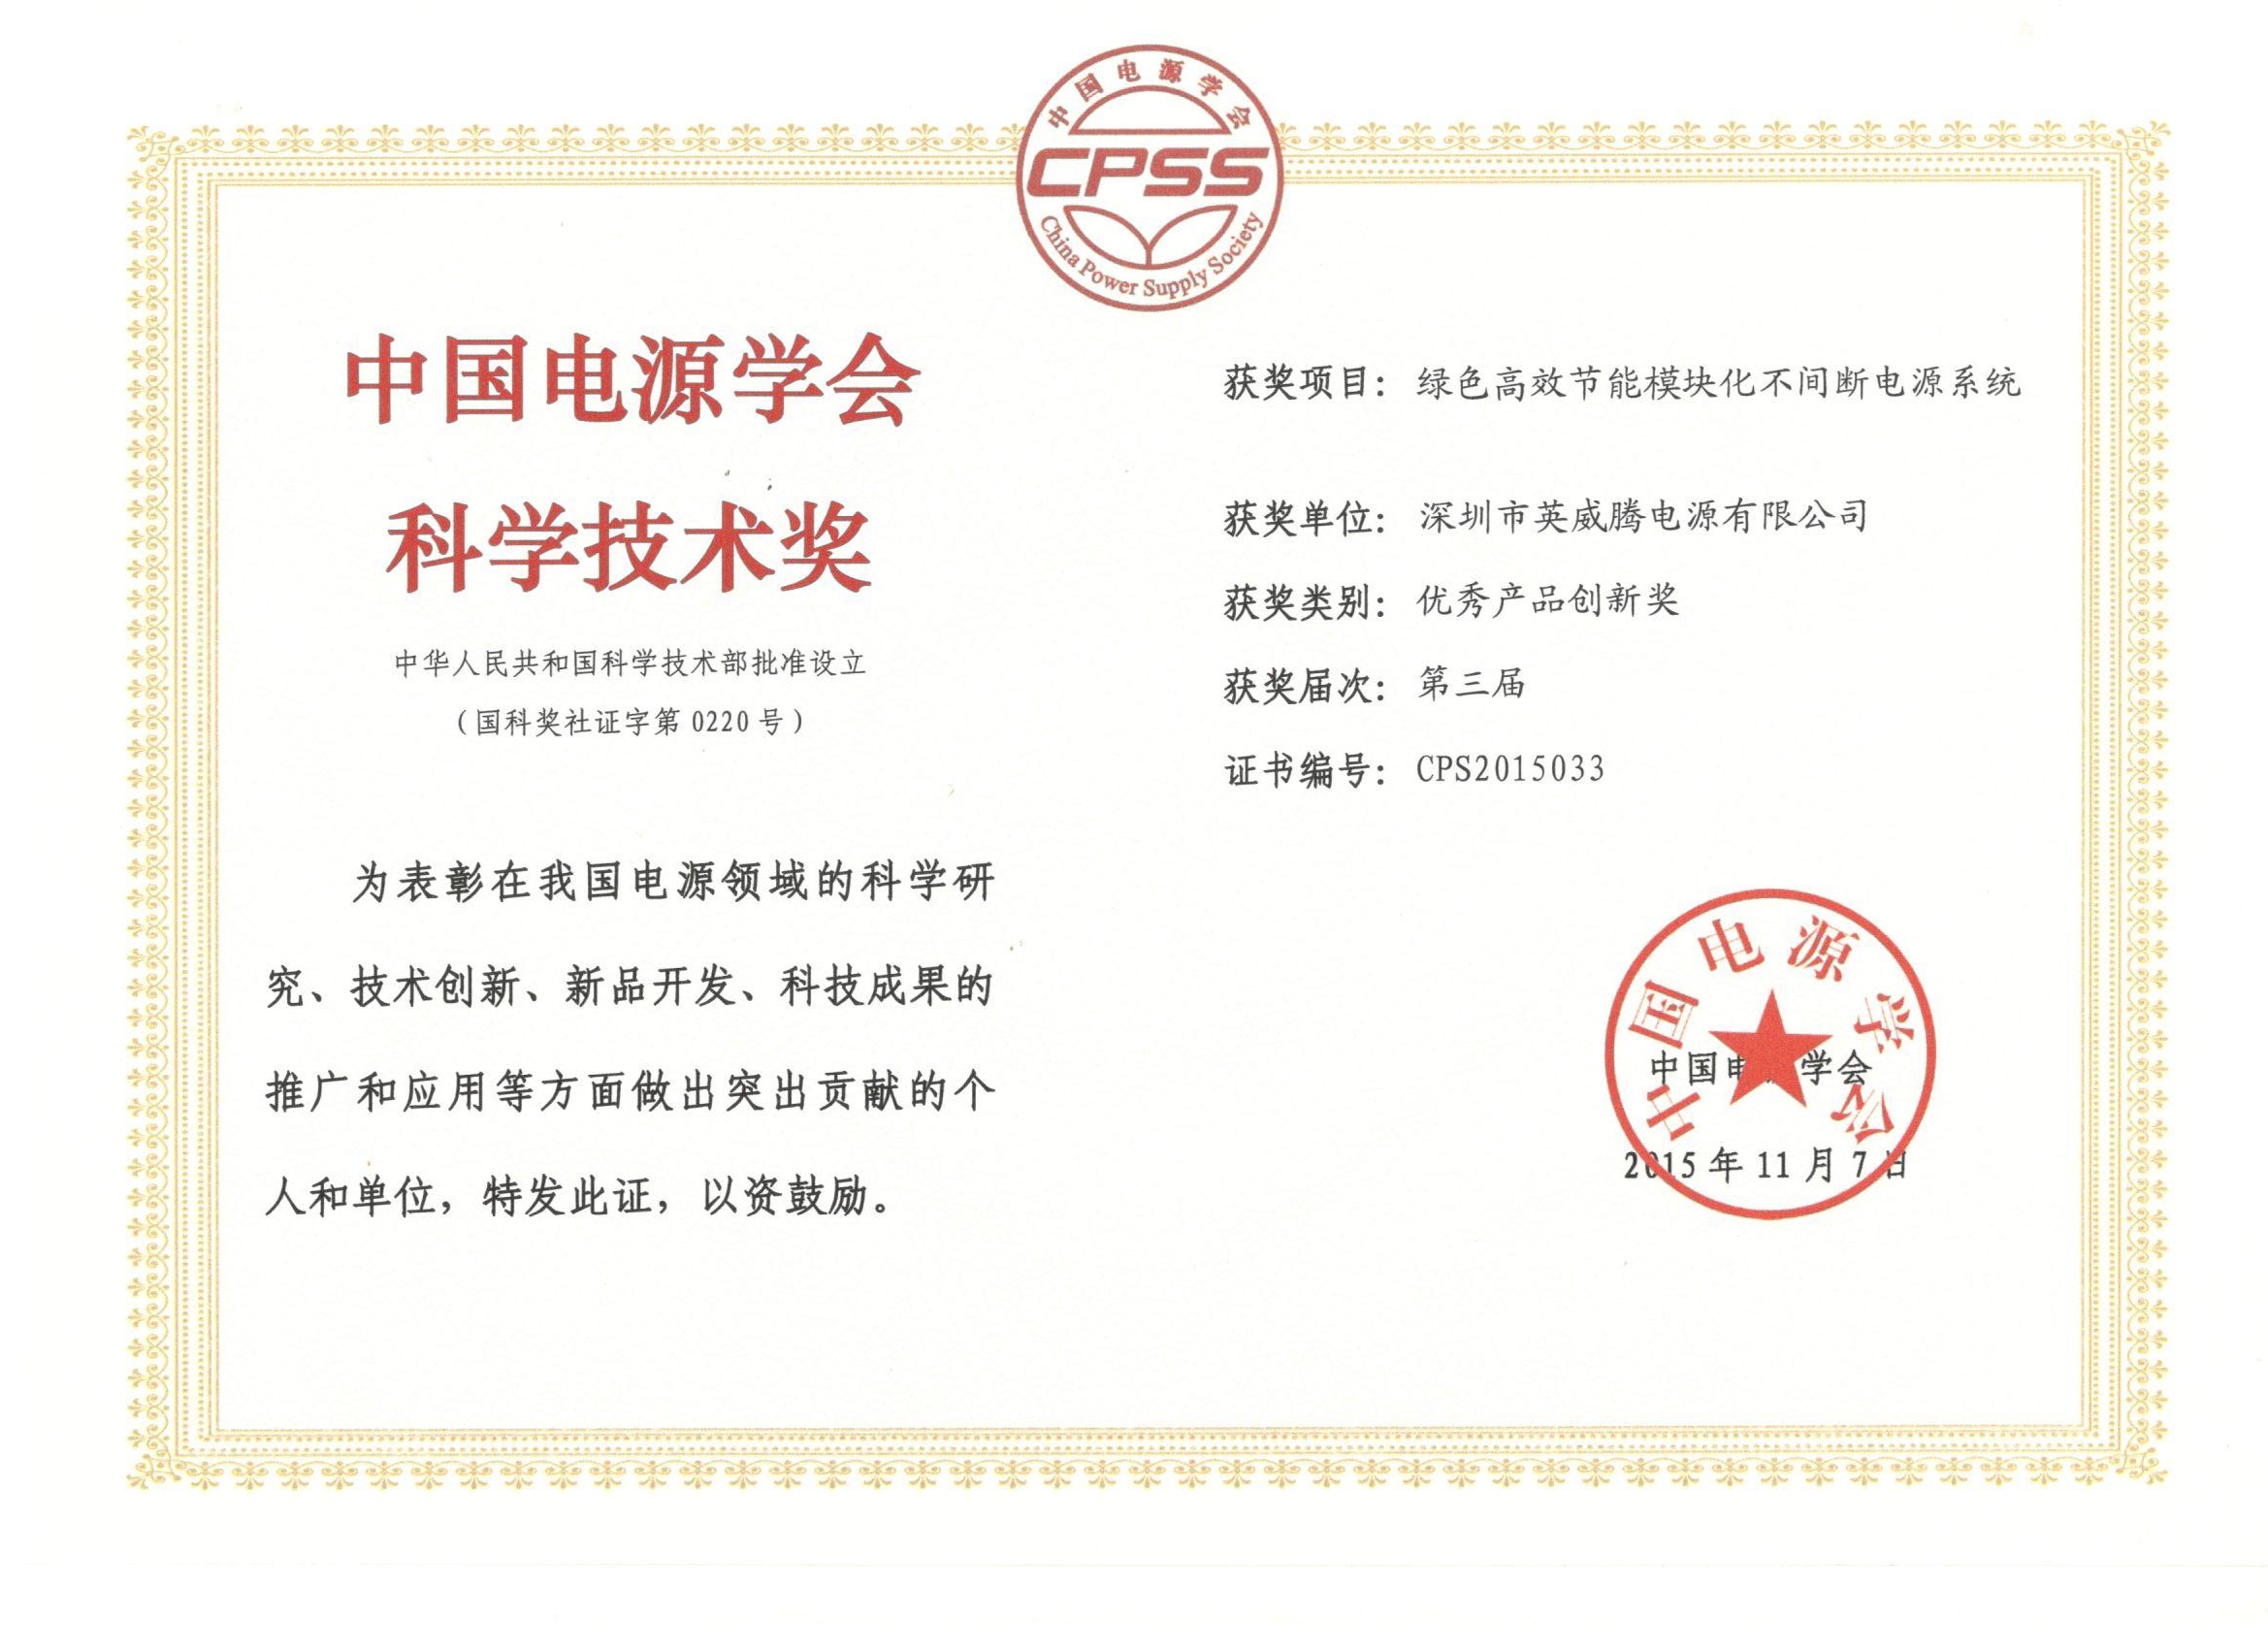 英威騰電源榮獲第三屆中國電源學會科學技術獎